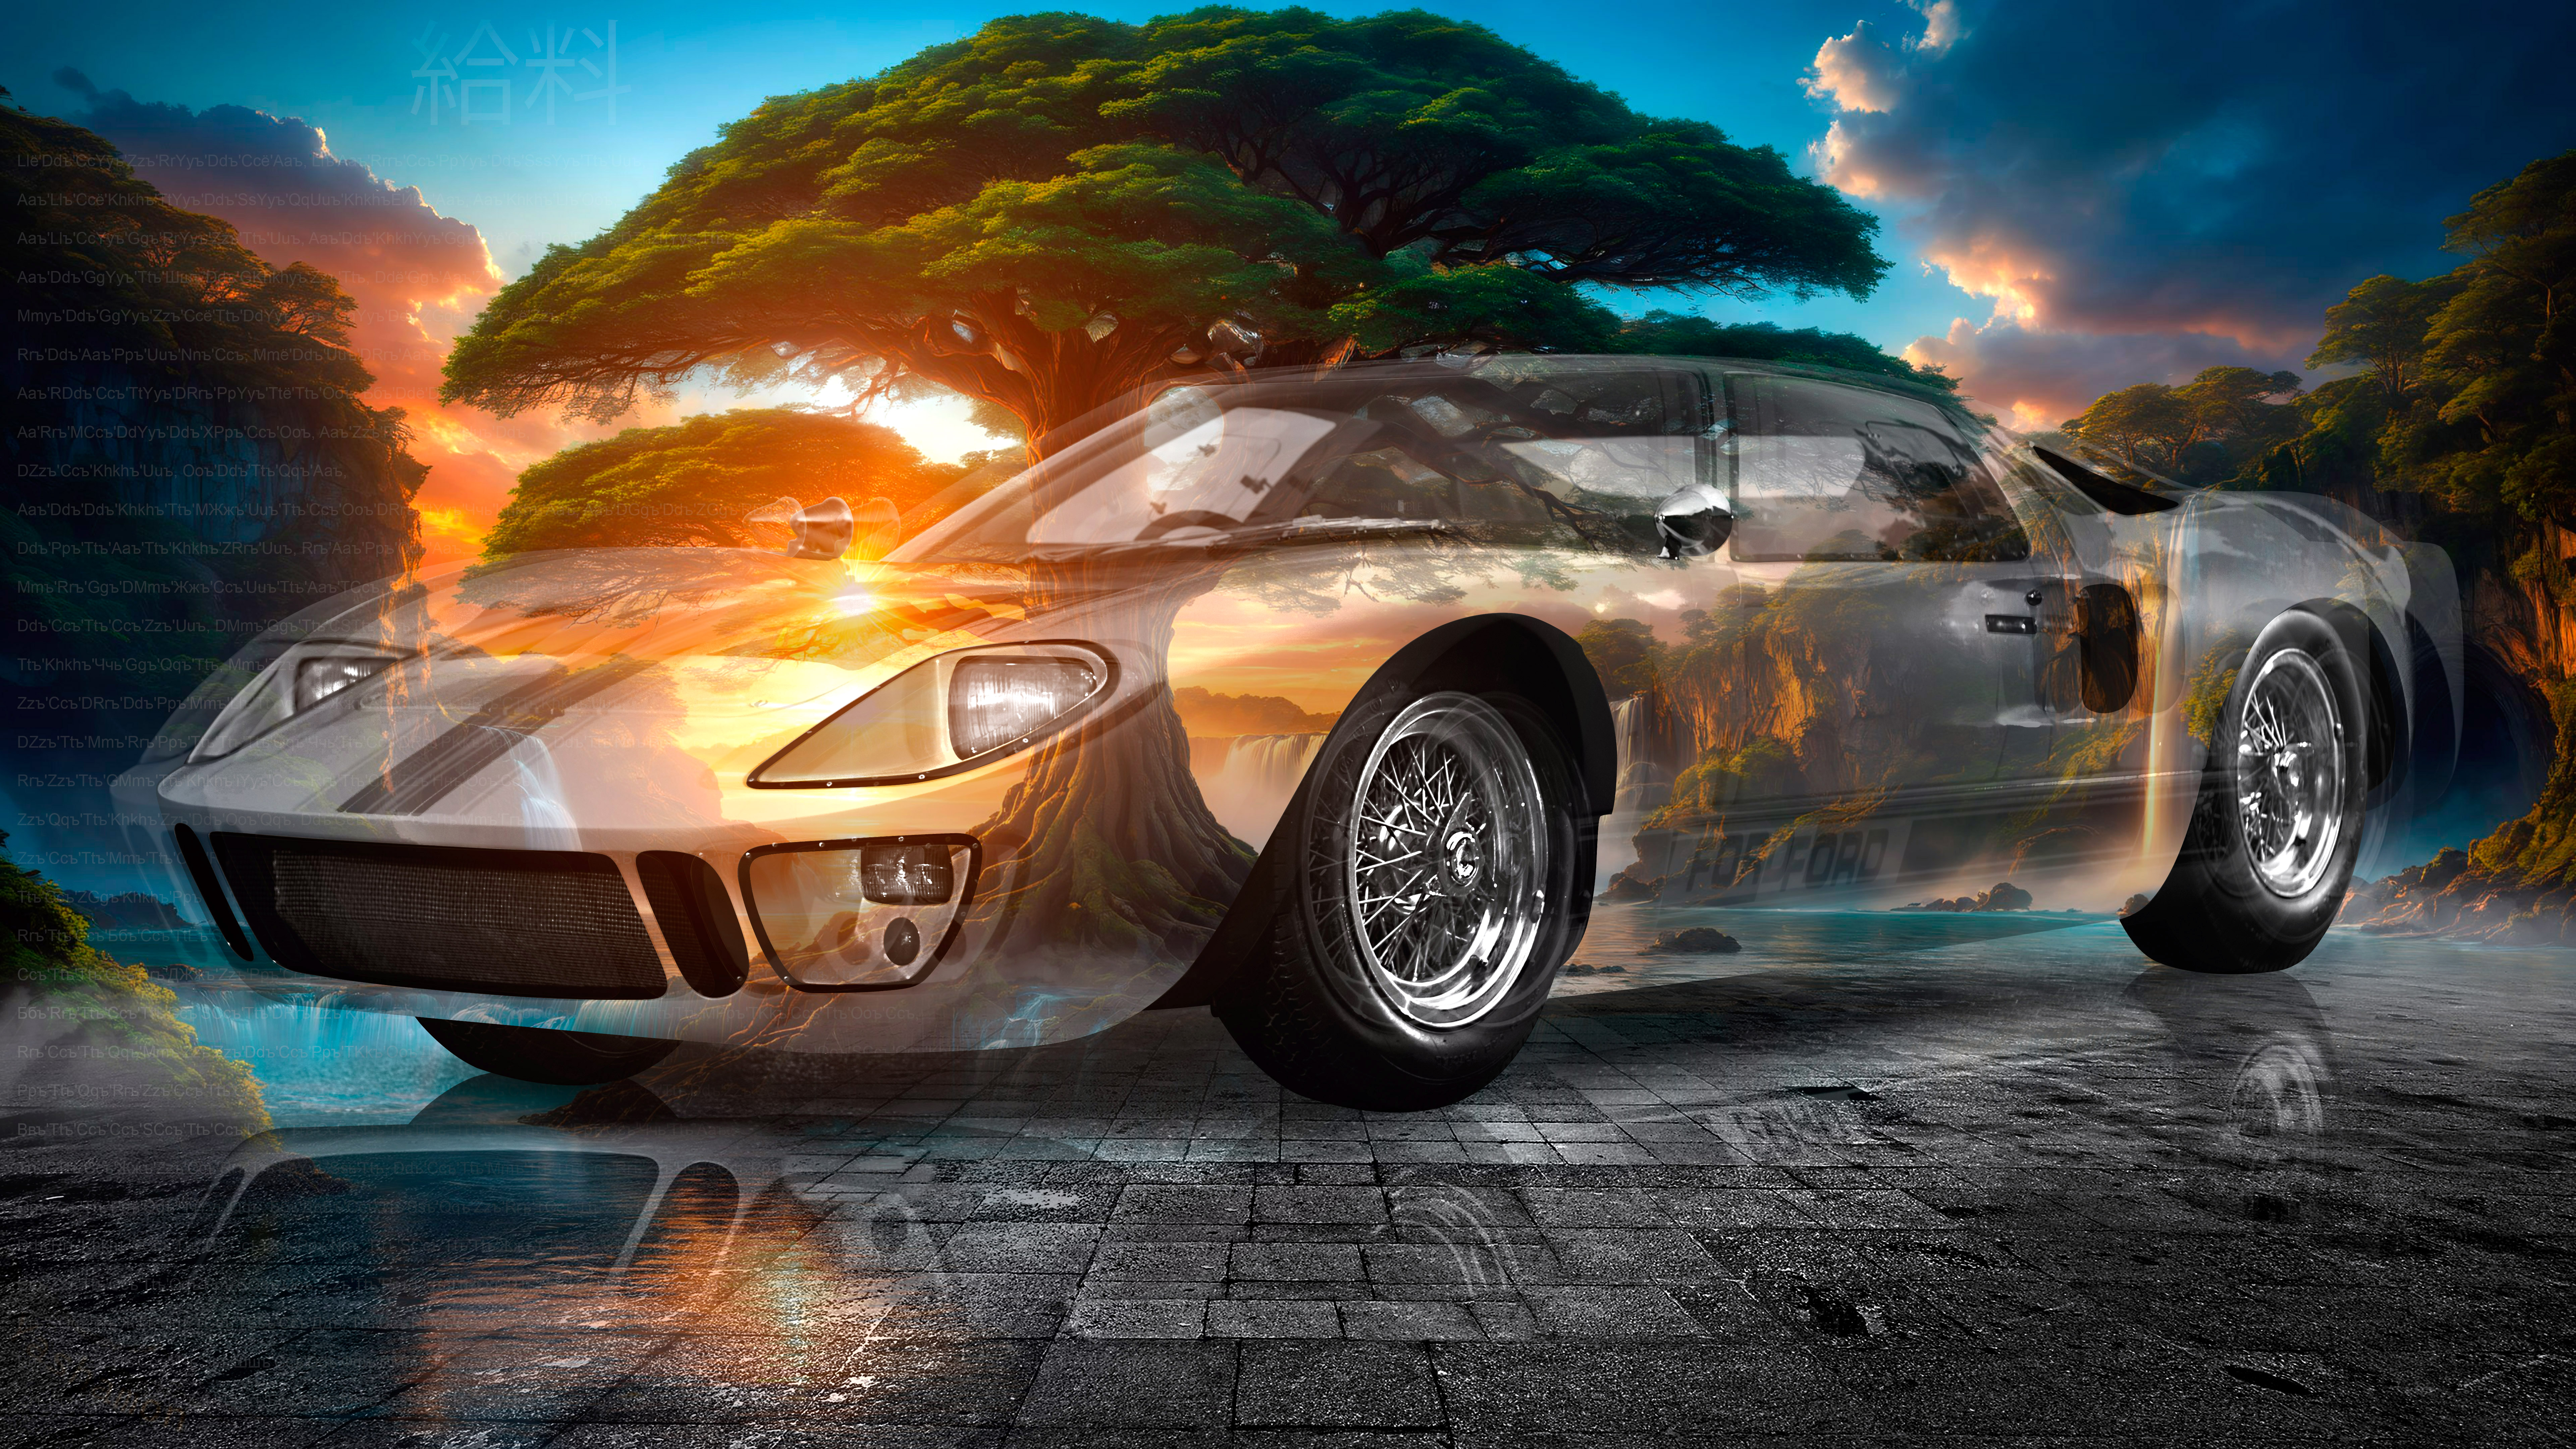 Ford-GT40-Road-Version-Super-Crystal-Tutorial-Big-Tree-Tactile-Hologram-Art-Car